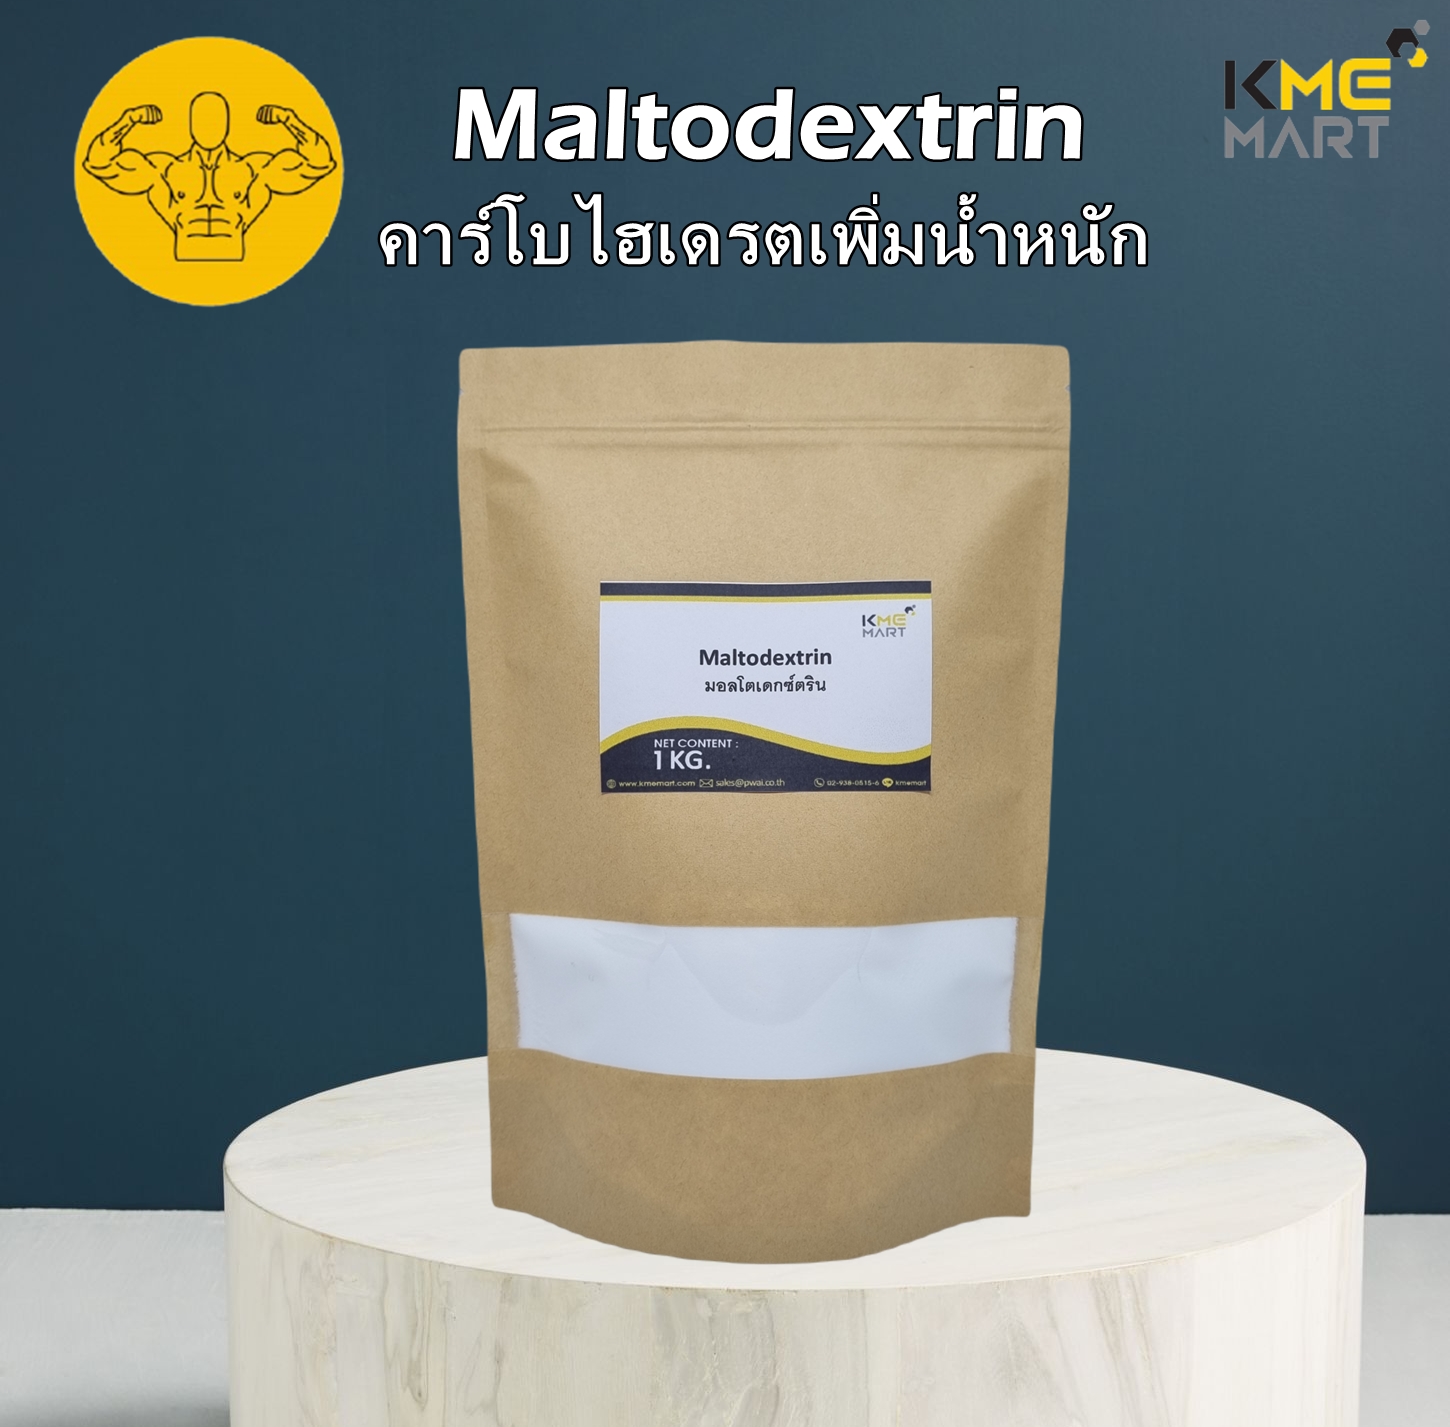 Maltodextrin คาร์โบไฮเดรตเพิ่มน้ำหนัก มอลโตเดกซ์ตริน - 1 กิโลกรัม